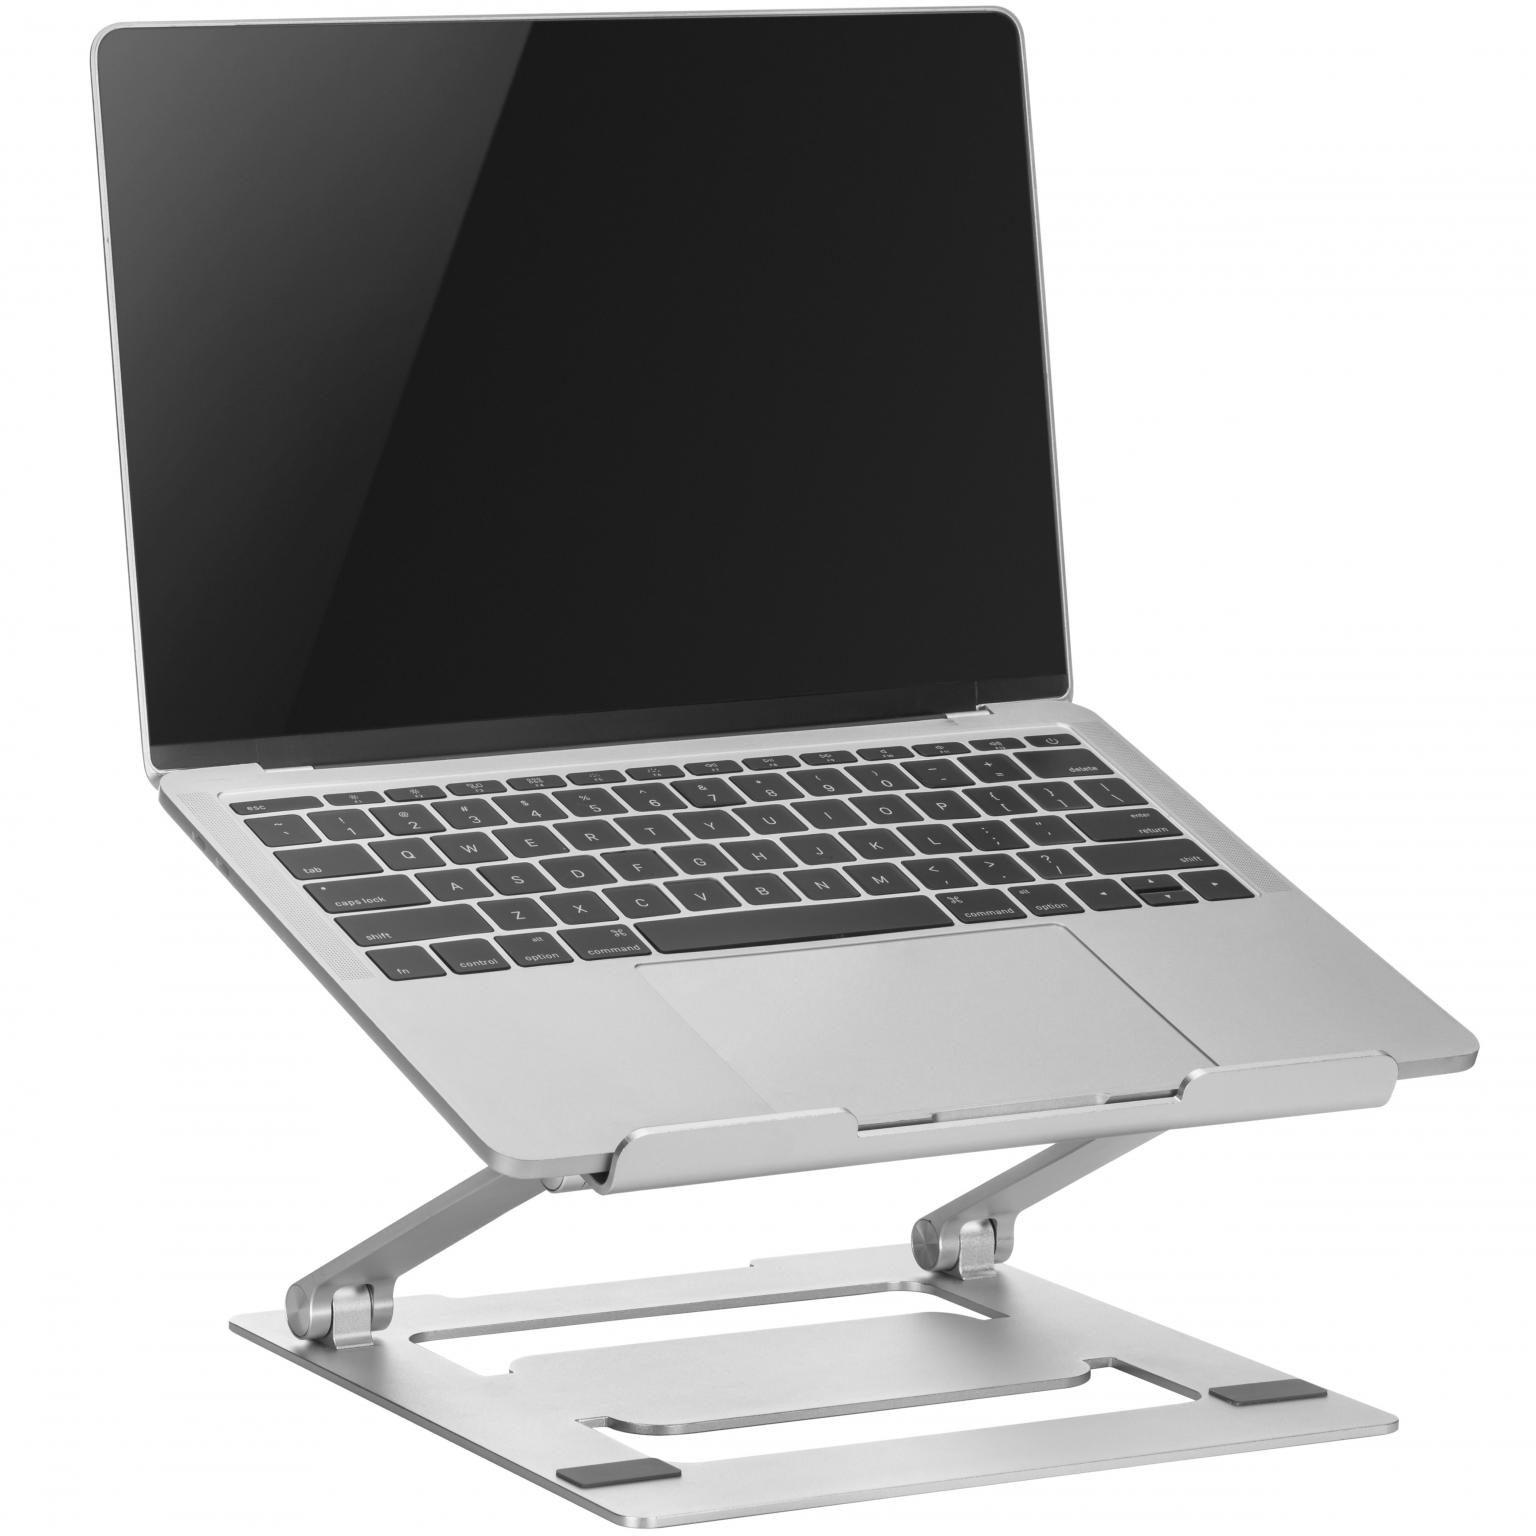 slaaf escort Verwarren Laptop steun - Schermformaat: 11 t/m 17 inch, Afmetingen: 240x240x44mm  Materiaal: Aluminum, siliconen pad